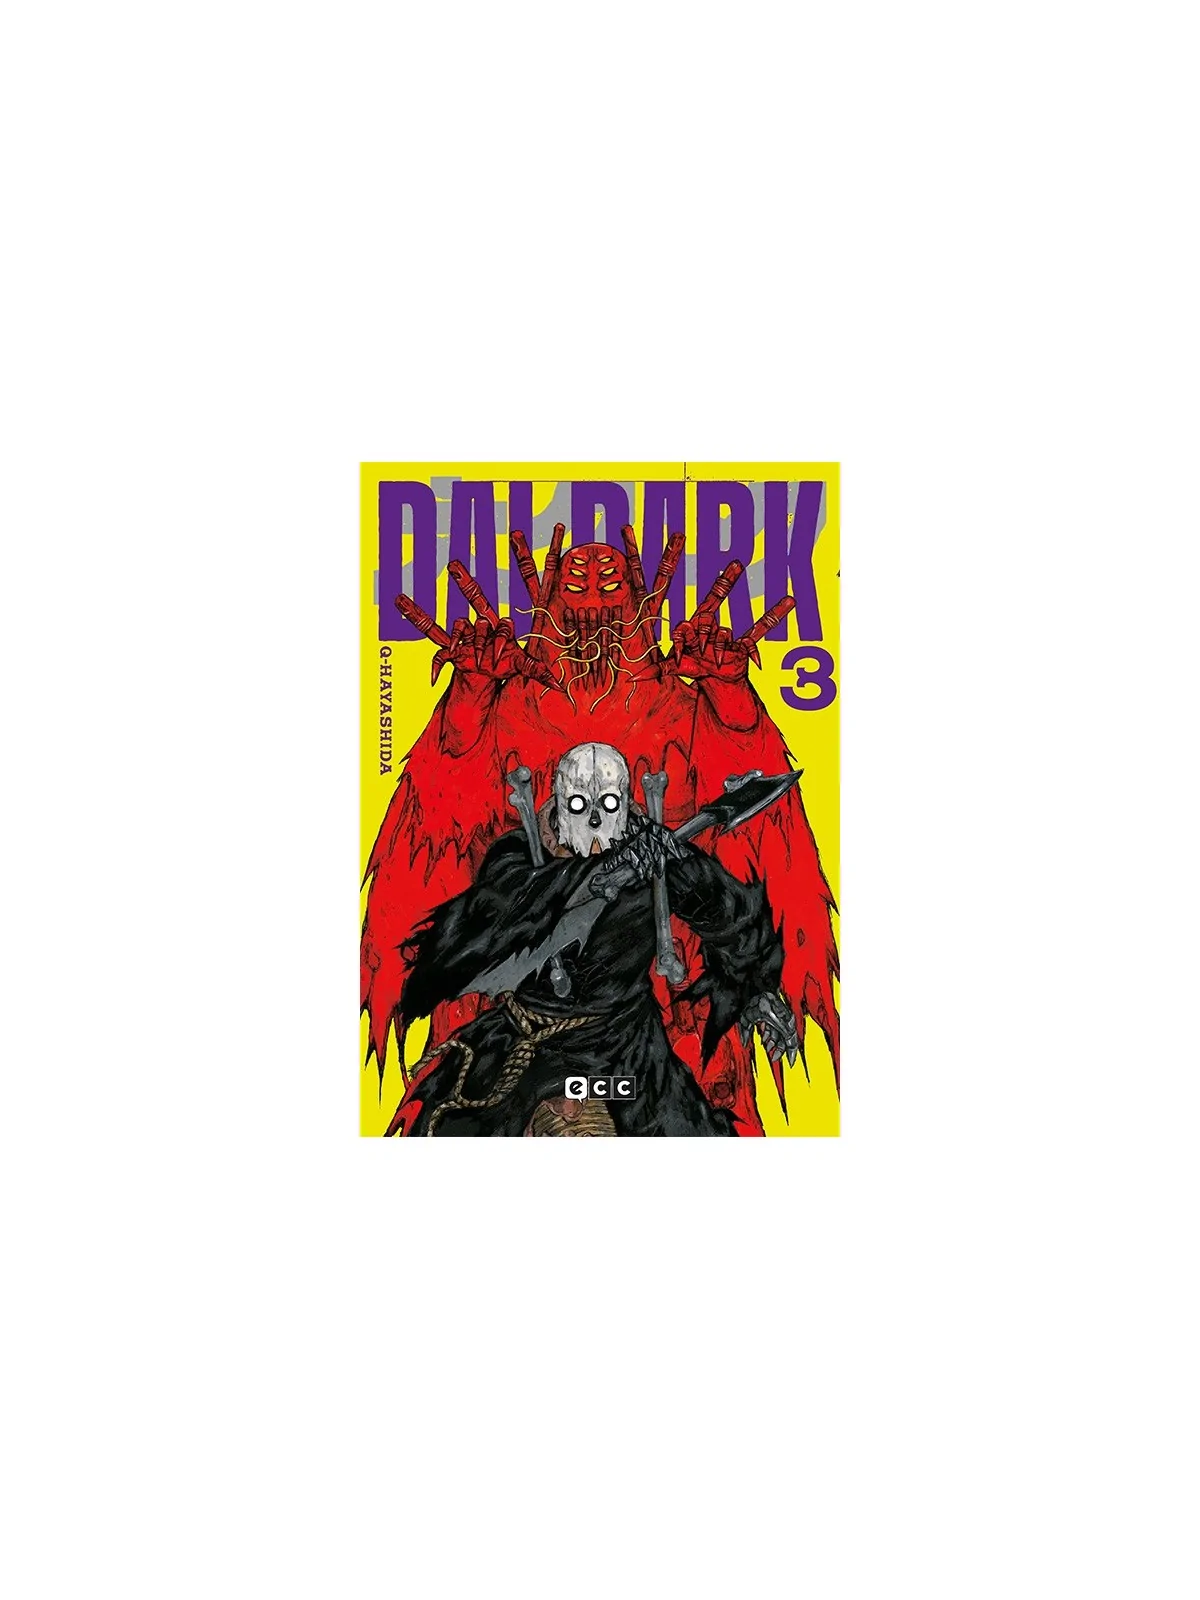 Comprar Dai Dark 03 barato al mejor precio 11,35 € de Ecc Ediciones